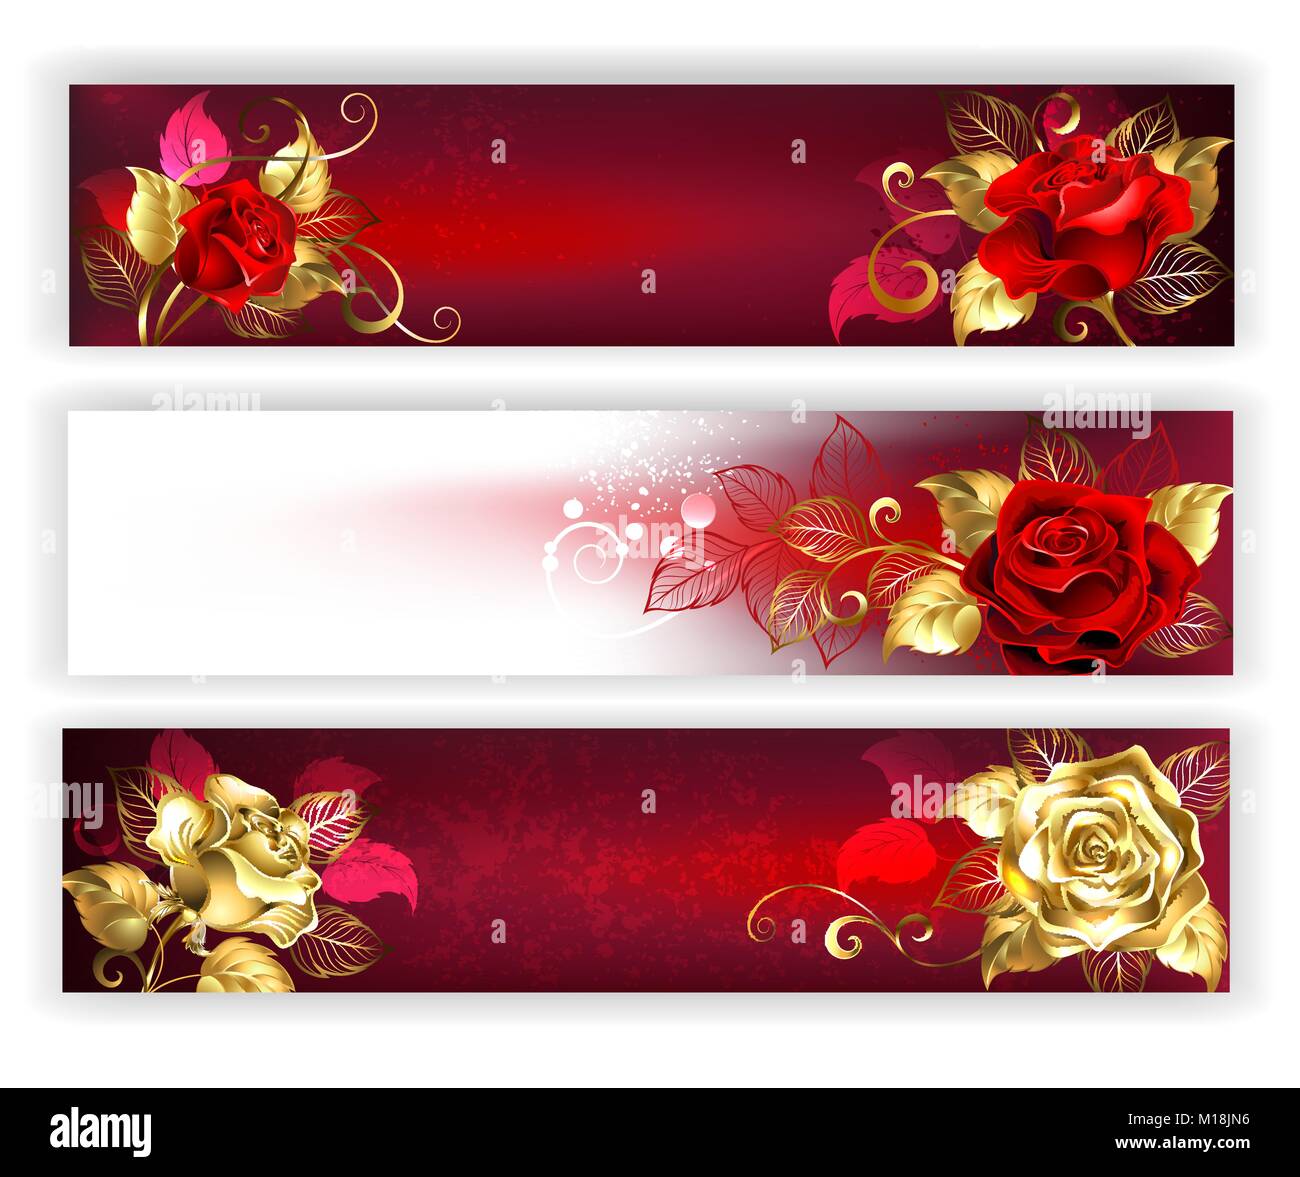 Drei horizontale Banner mit Rot und Gold Schmuck Rosen mit Blattgold. Goldene Rosen. Design mit Rosen. Stock Vektor